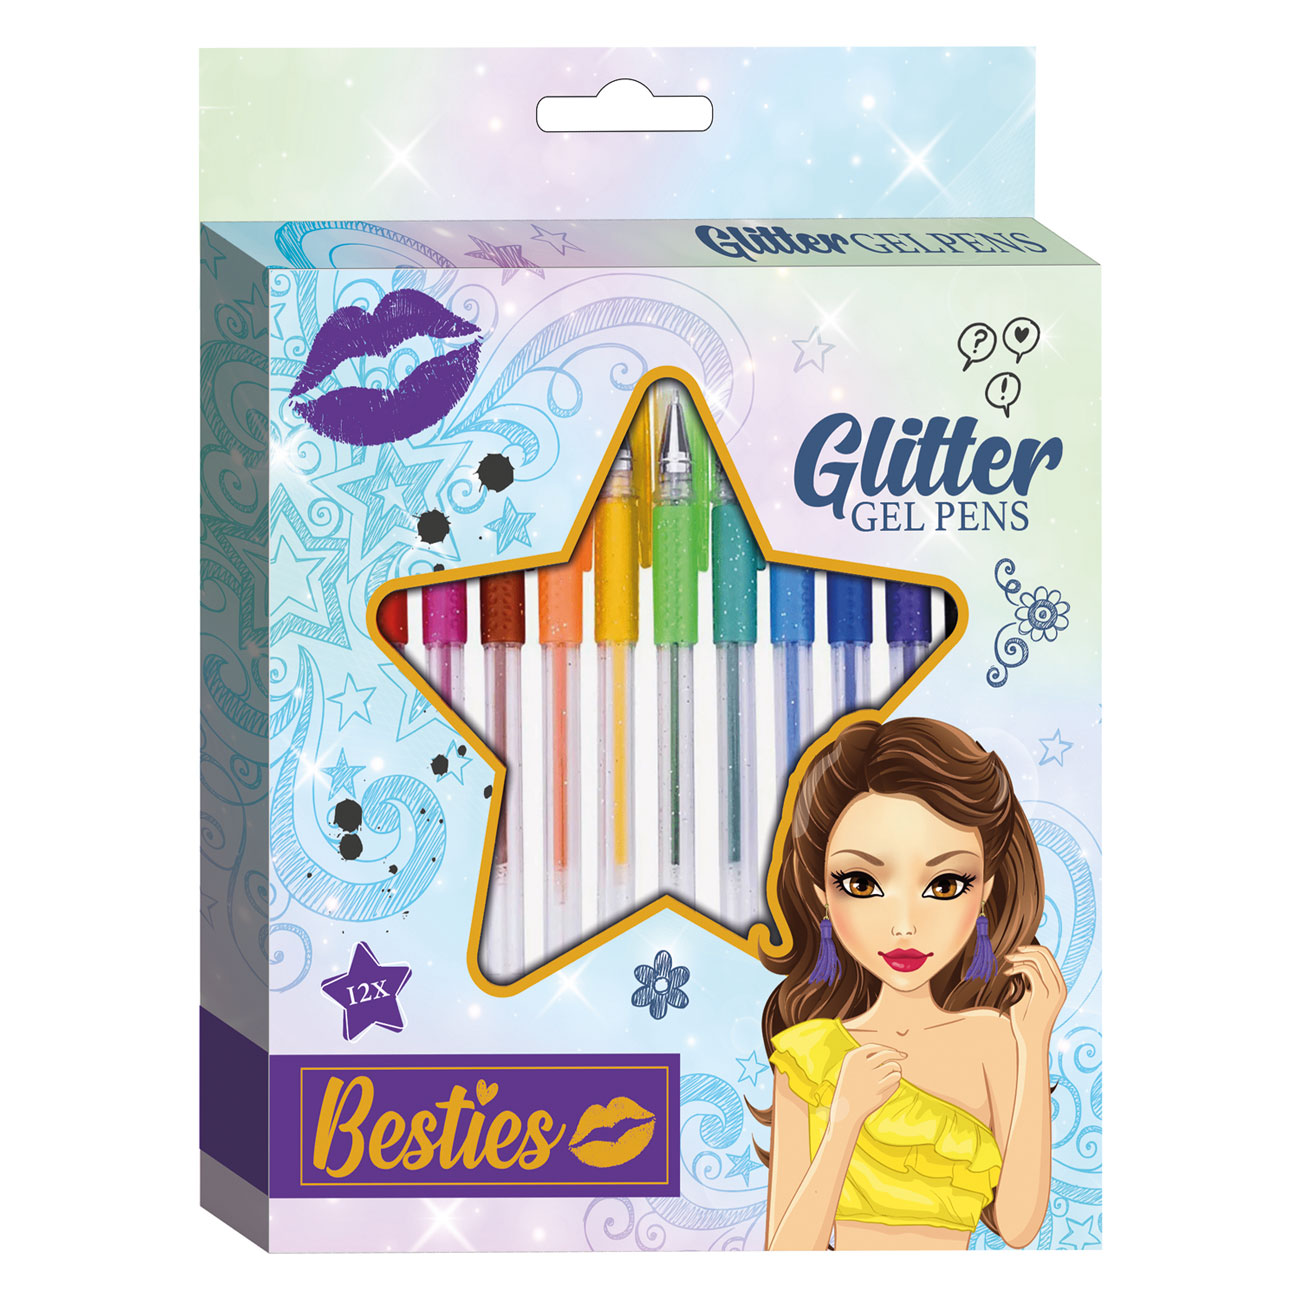 Besties set glitter gel pens